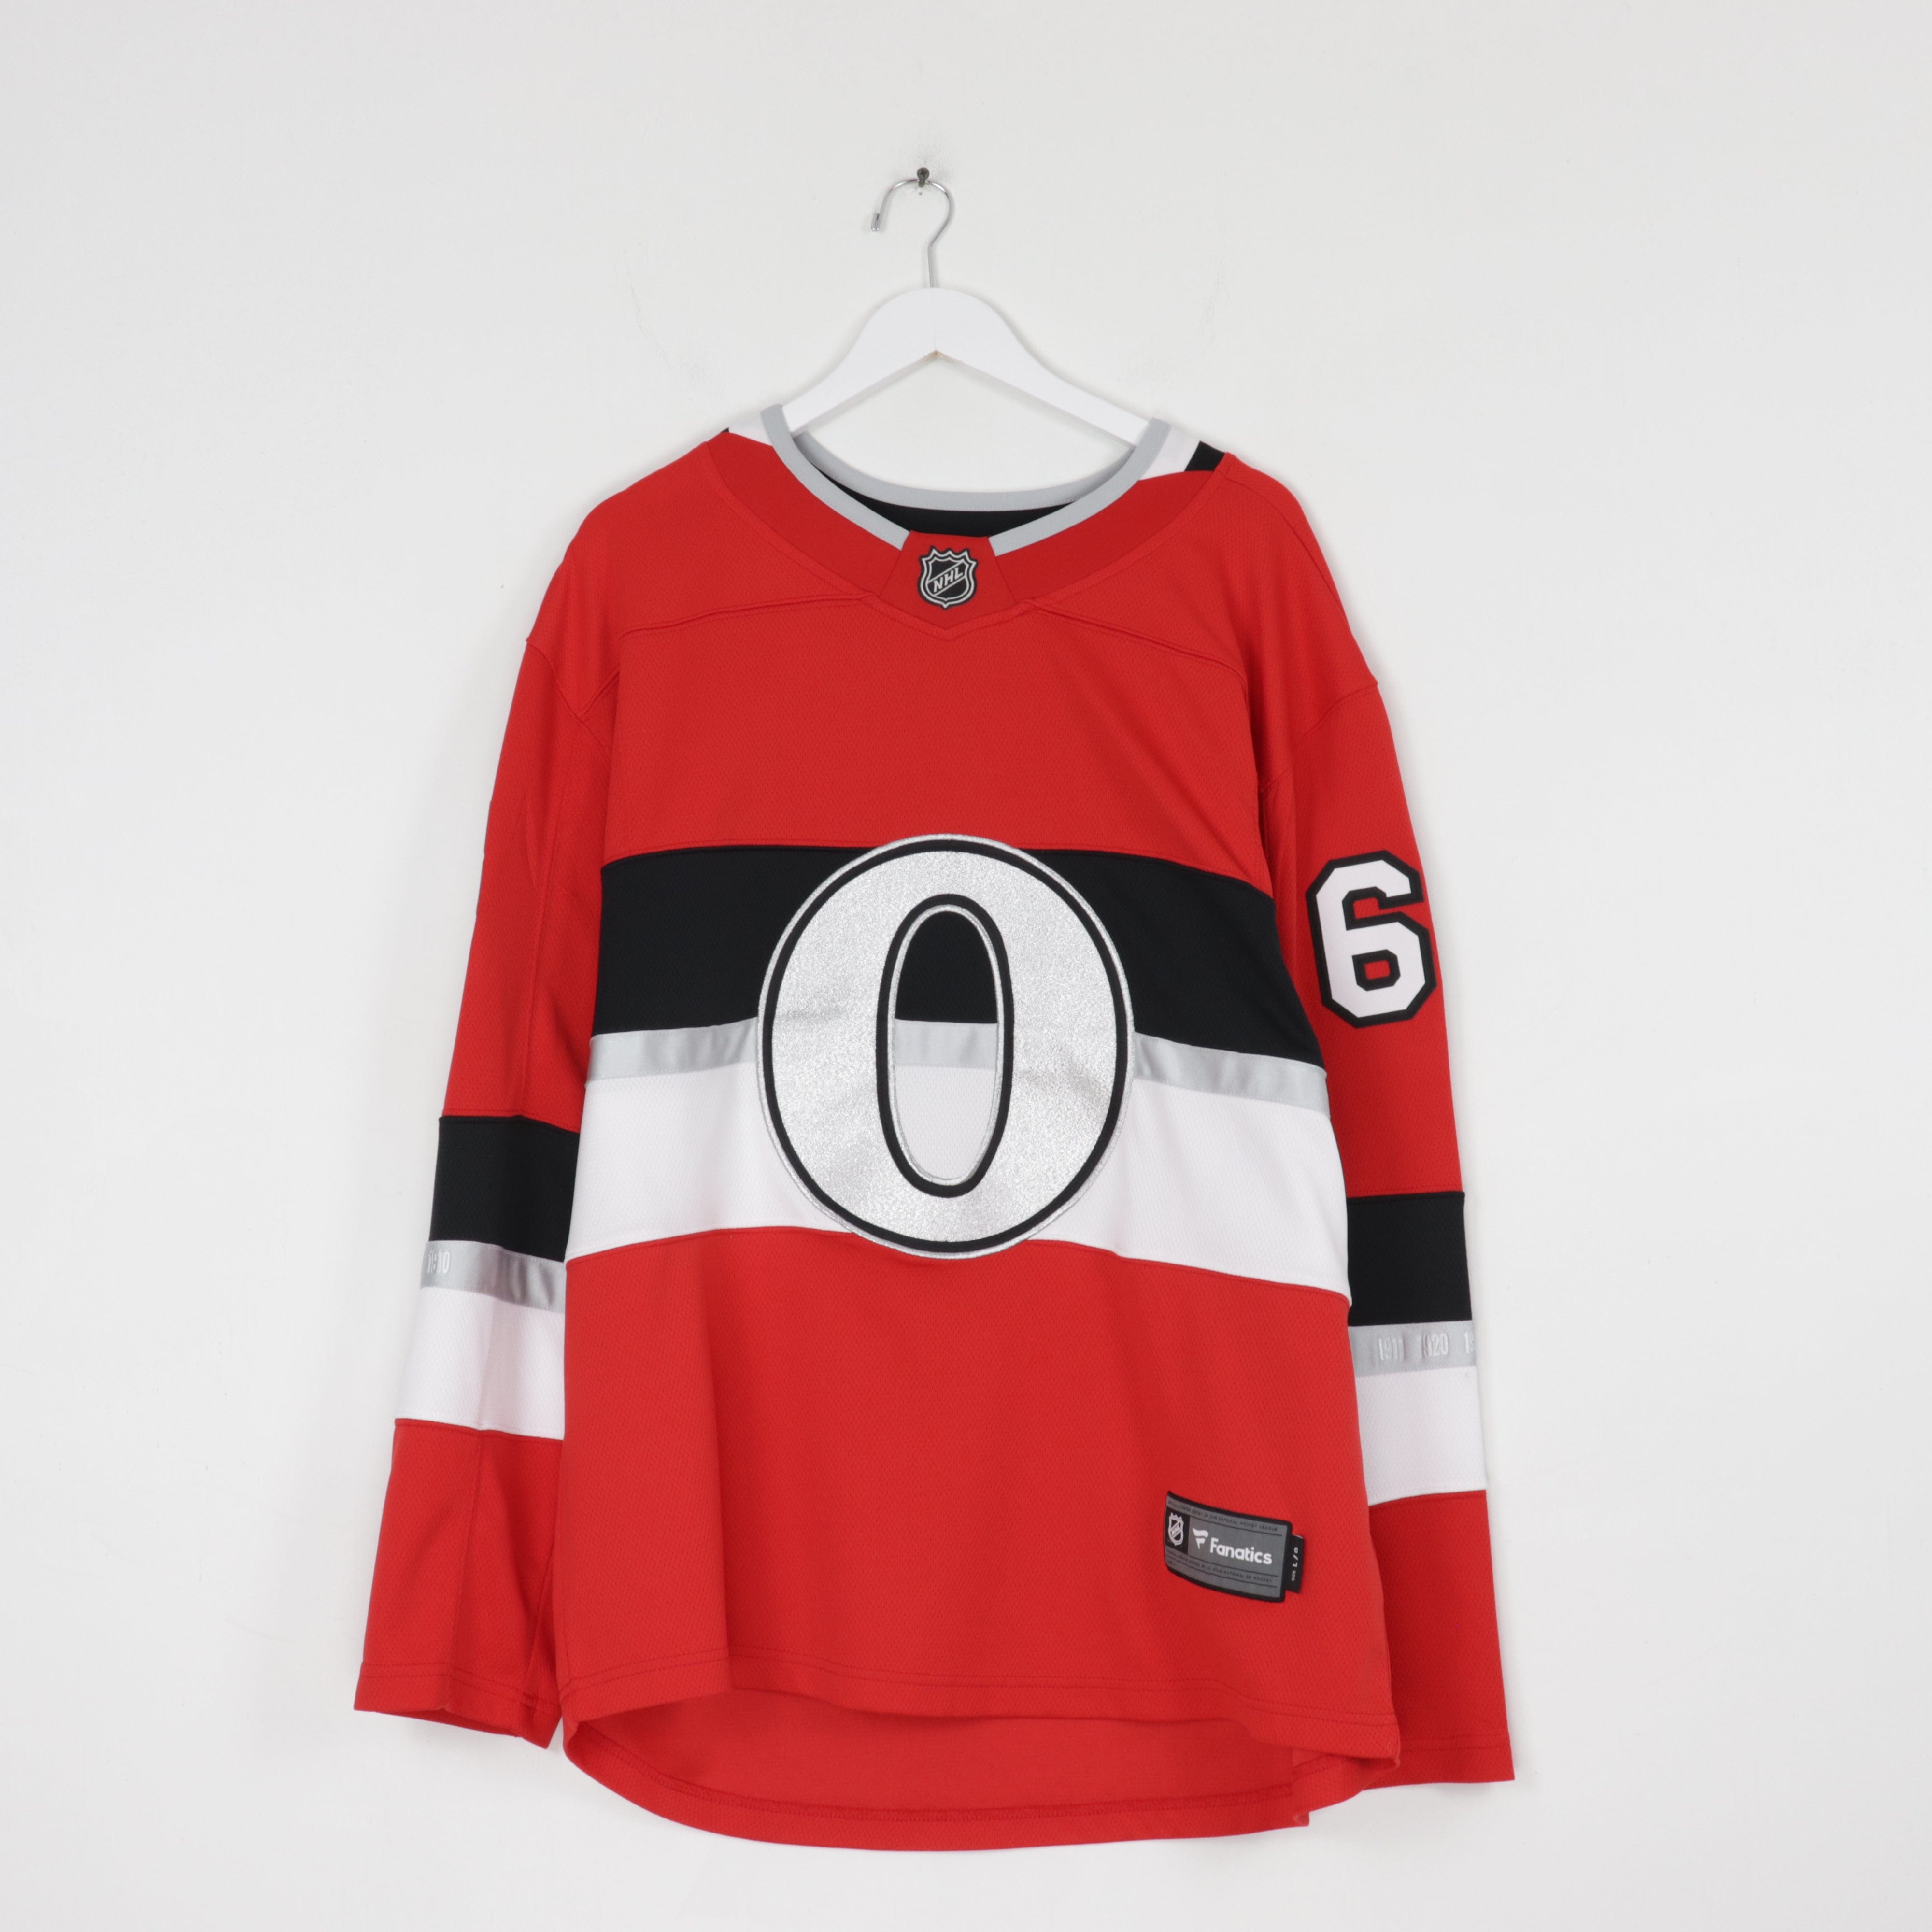 Fanatics - Kids' (Youth) Ottawa Senators Away Breakaway Jersey - NHL